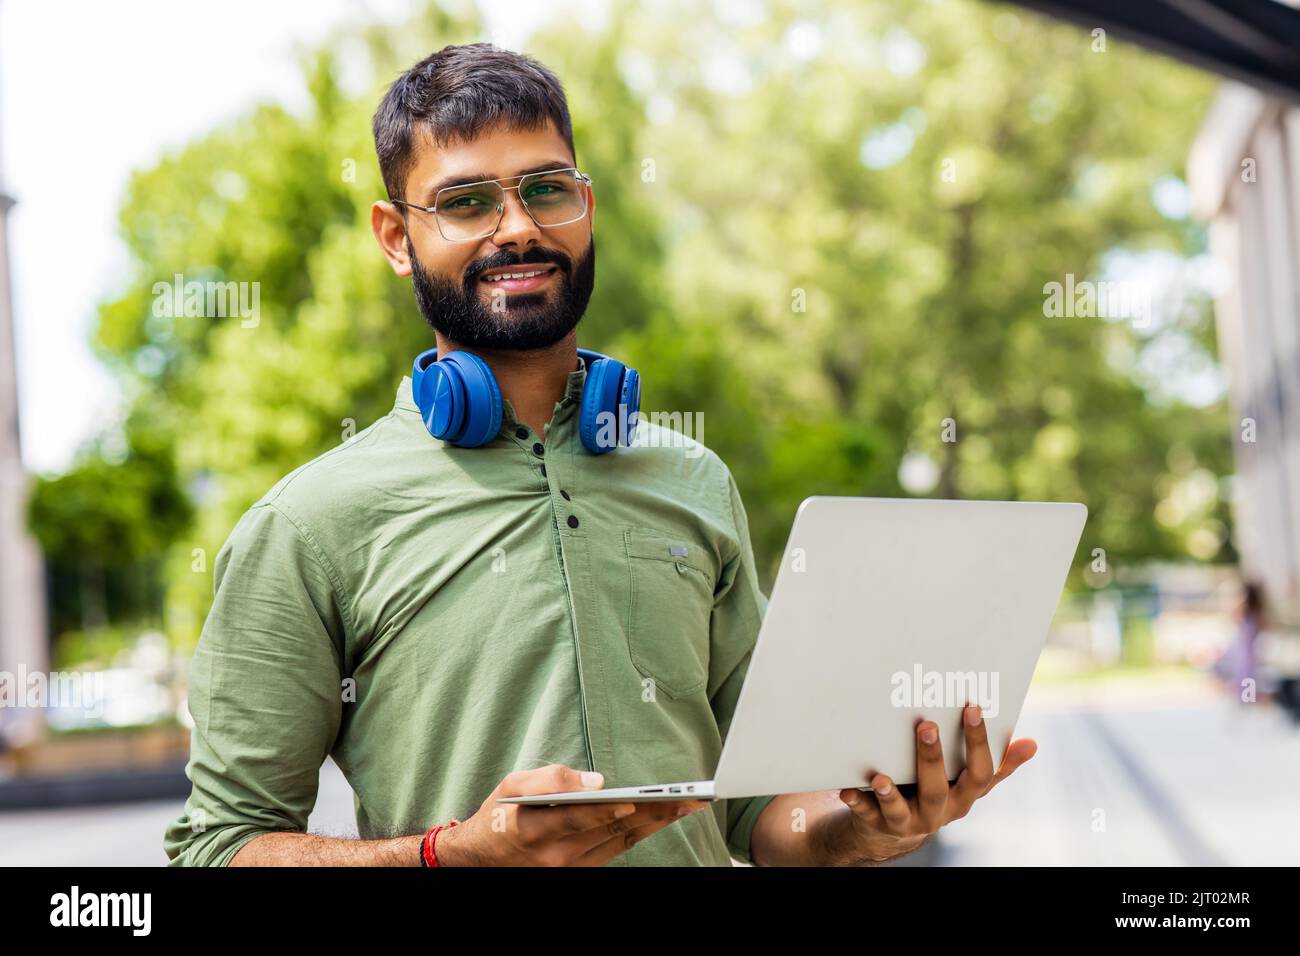 Portrait étudiant indien programmeur utilisant ordinateur portable dans le parc Banque D'Images